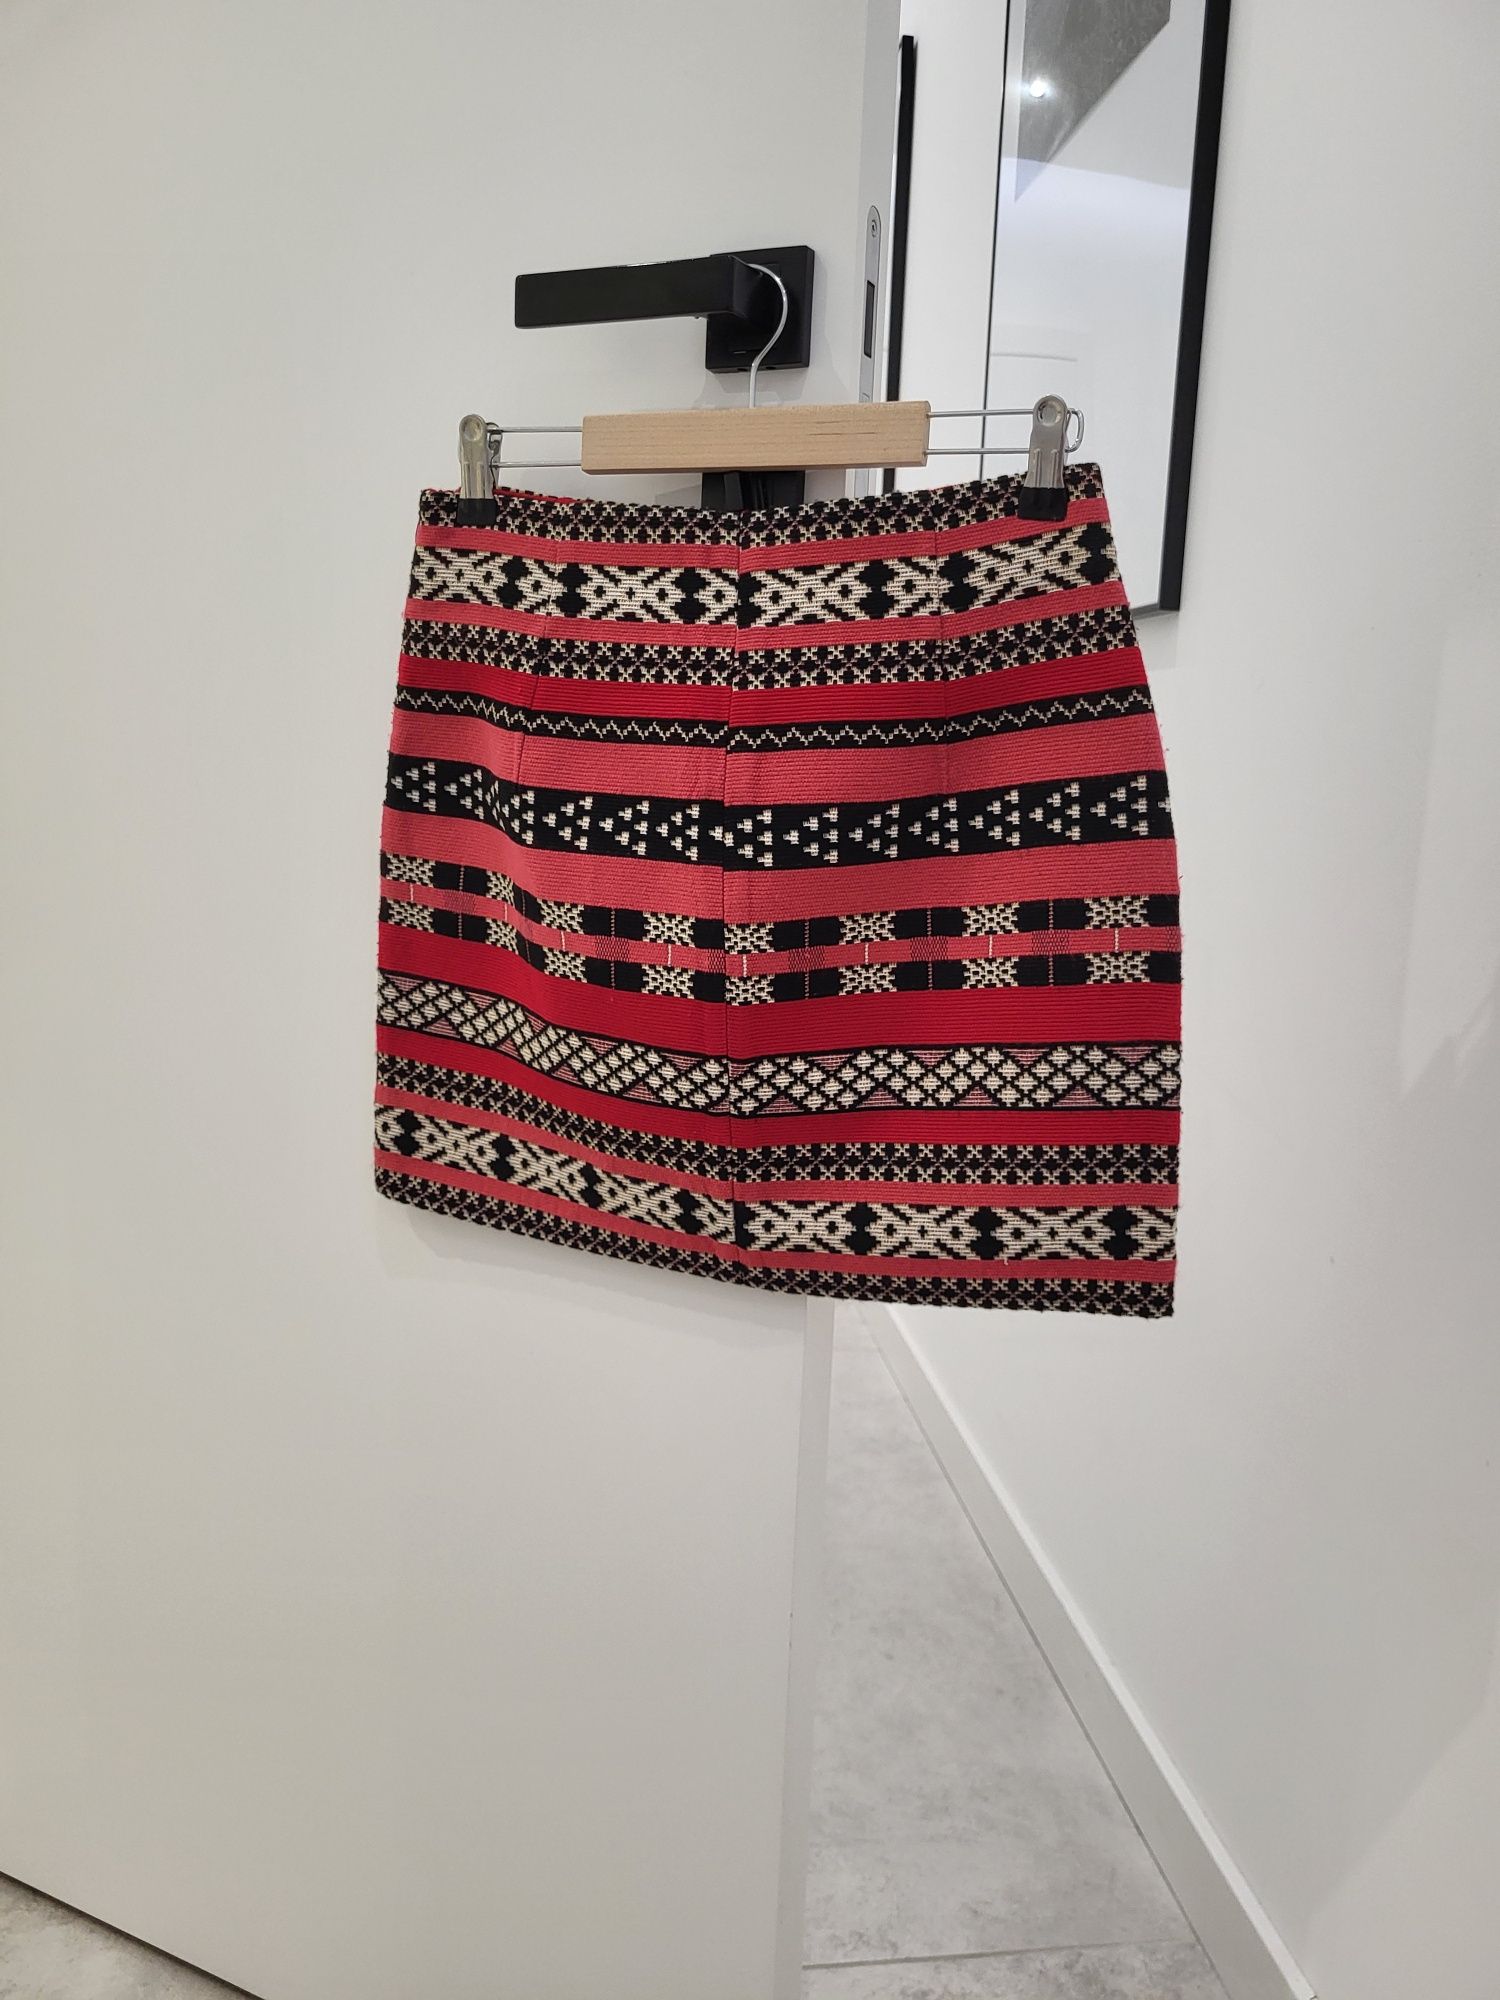 Spódnica mini Zara 38 M kolorowa krótka bandażowa poszukiwana aztec